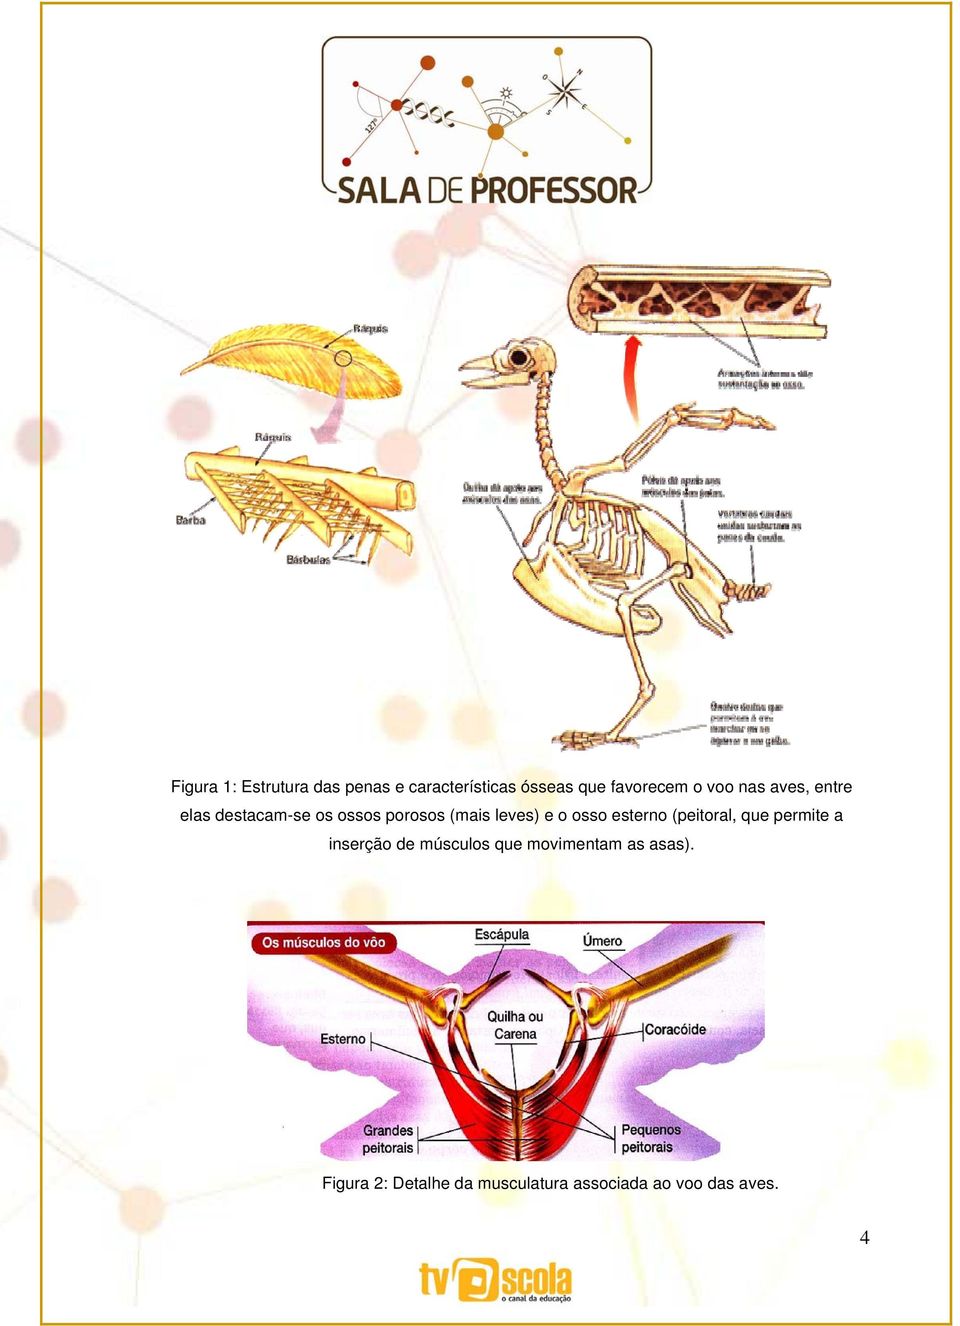 osso esterno (peitoral, que permite a inserção de músculos que